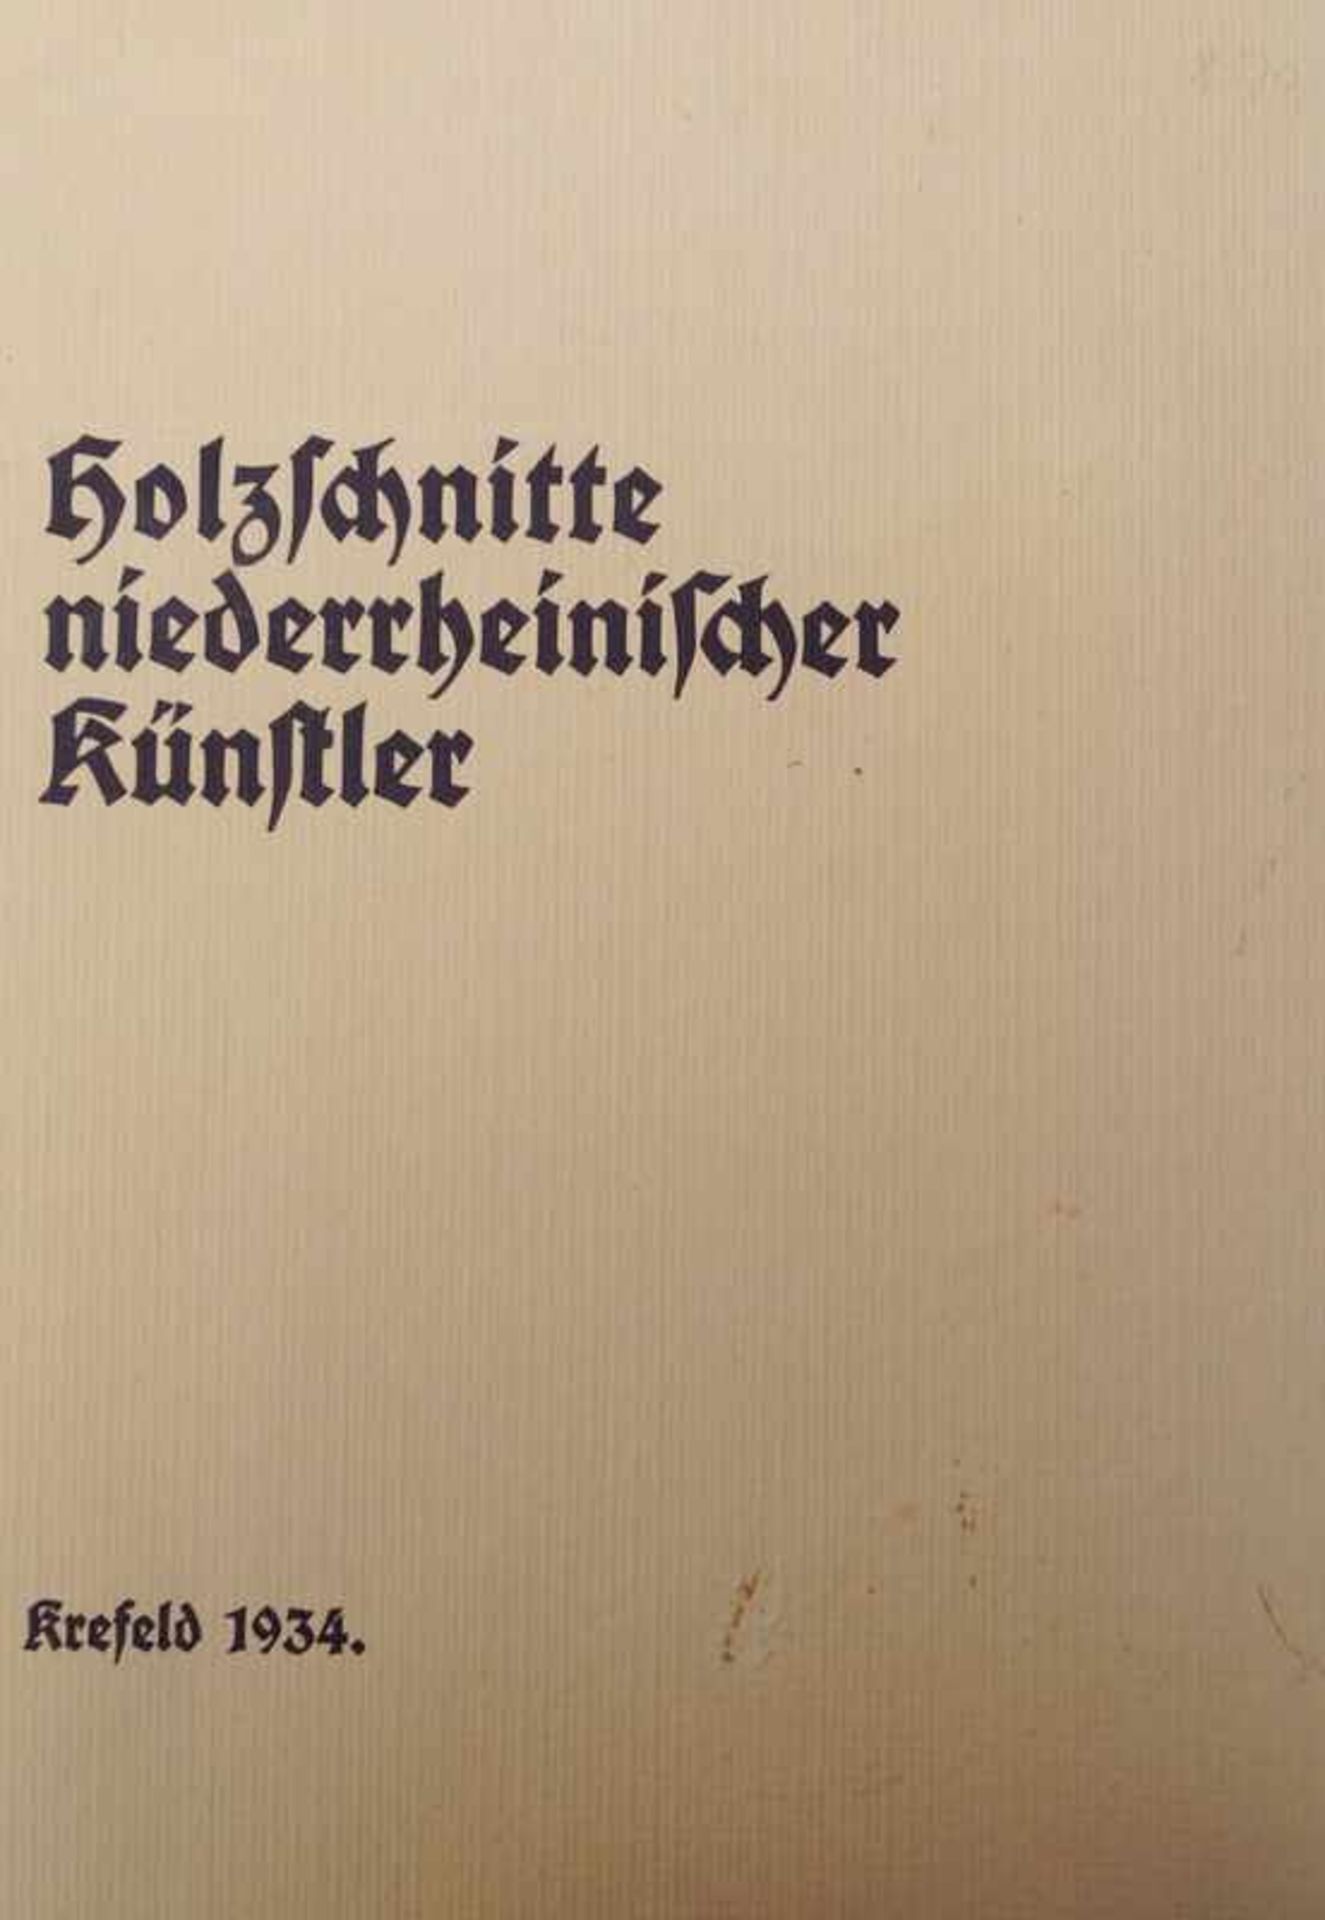 Mappe "Holzschnitte niederrheinischer Künstler" Krefeld 1934 Mappe erschienen 1934 im Zelt-Verlag zu